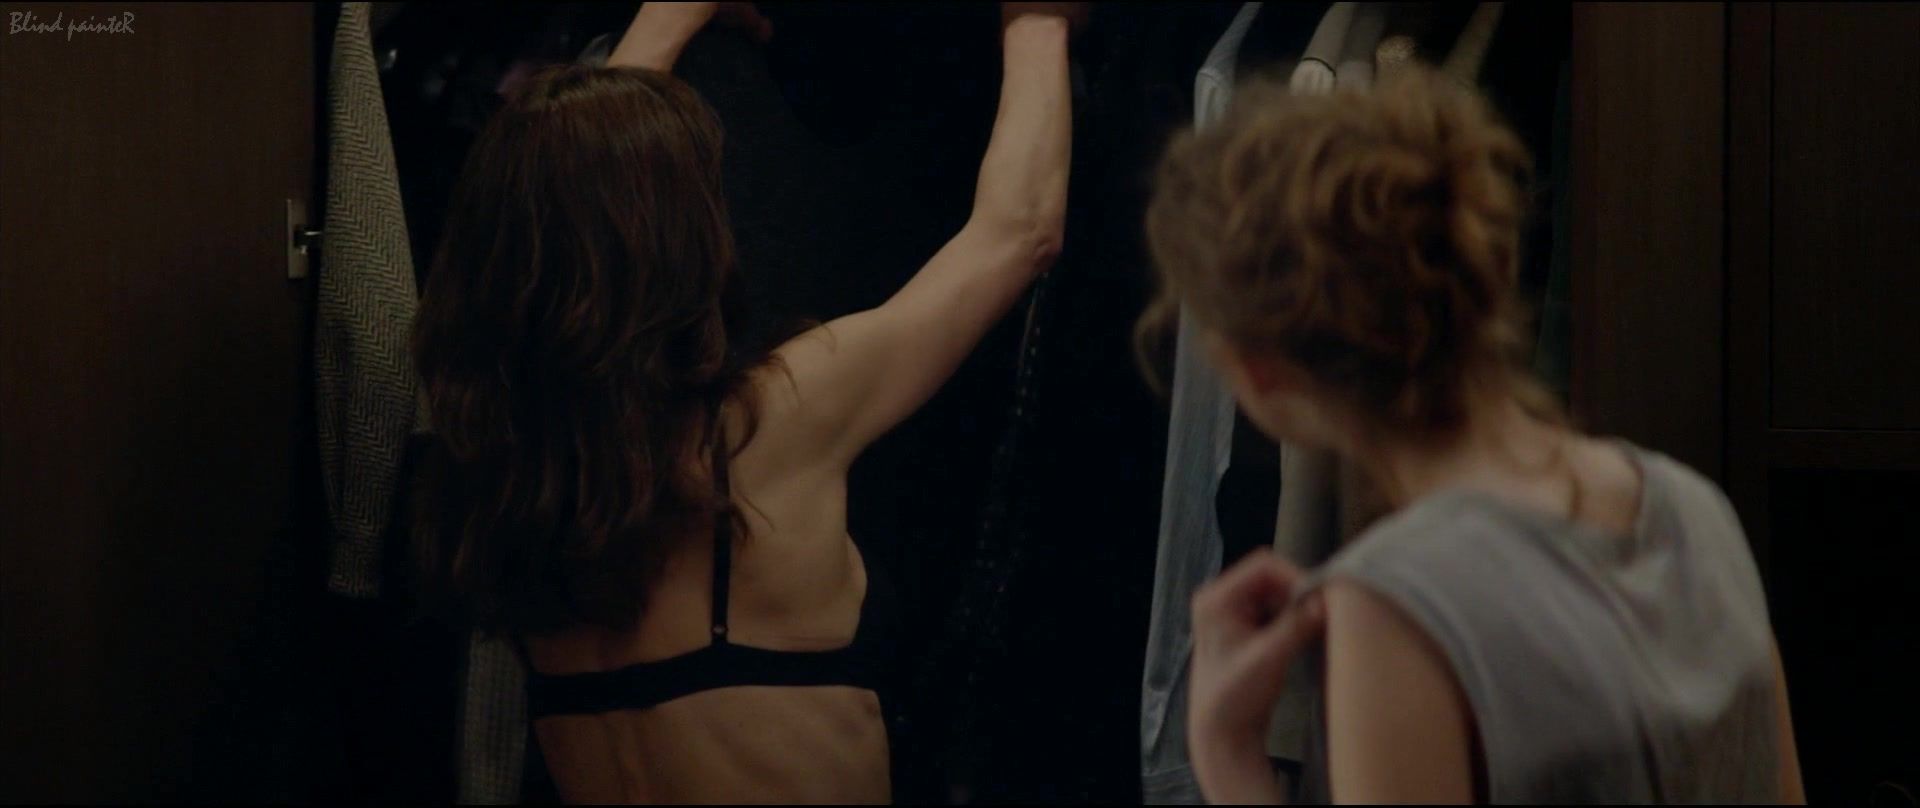 Blowing Sophie Marceau nude - Une Rencontre (2014) XVids